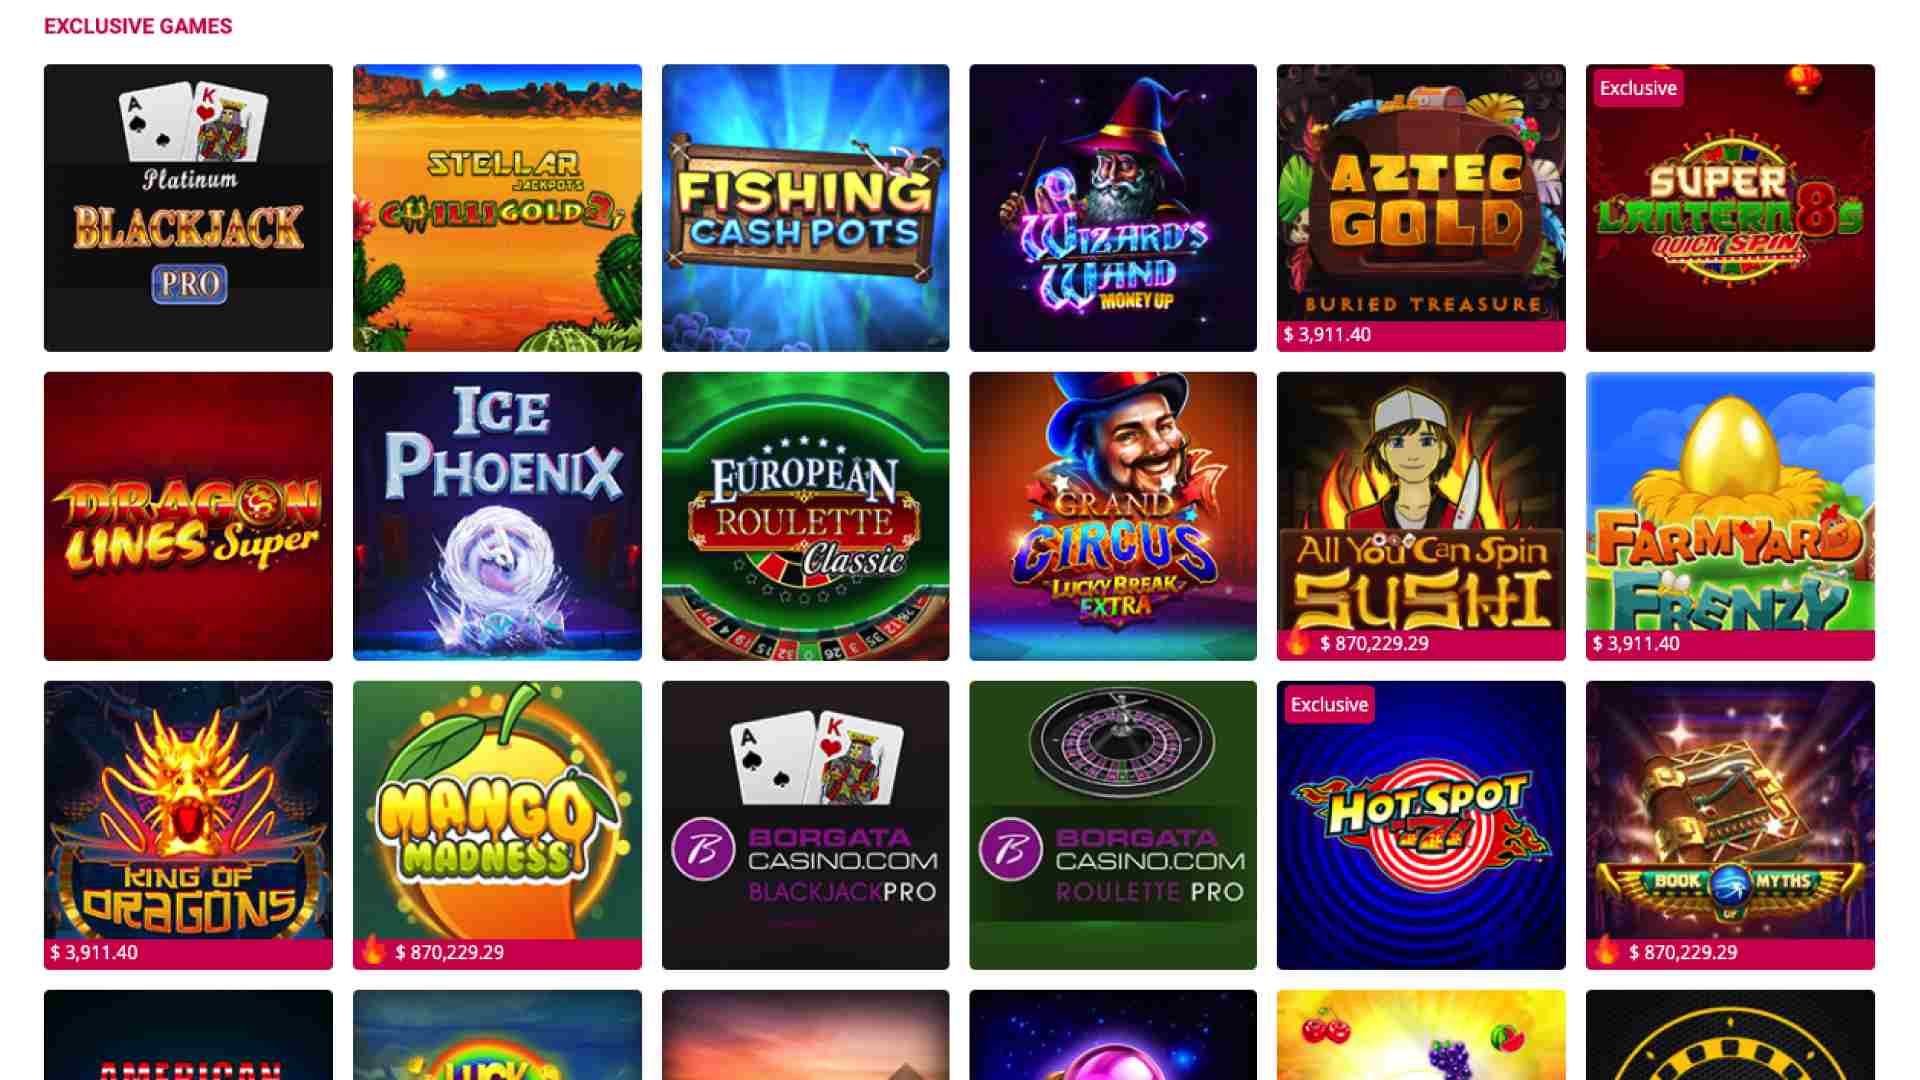 Borgata Casino Exclusive Games